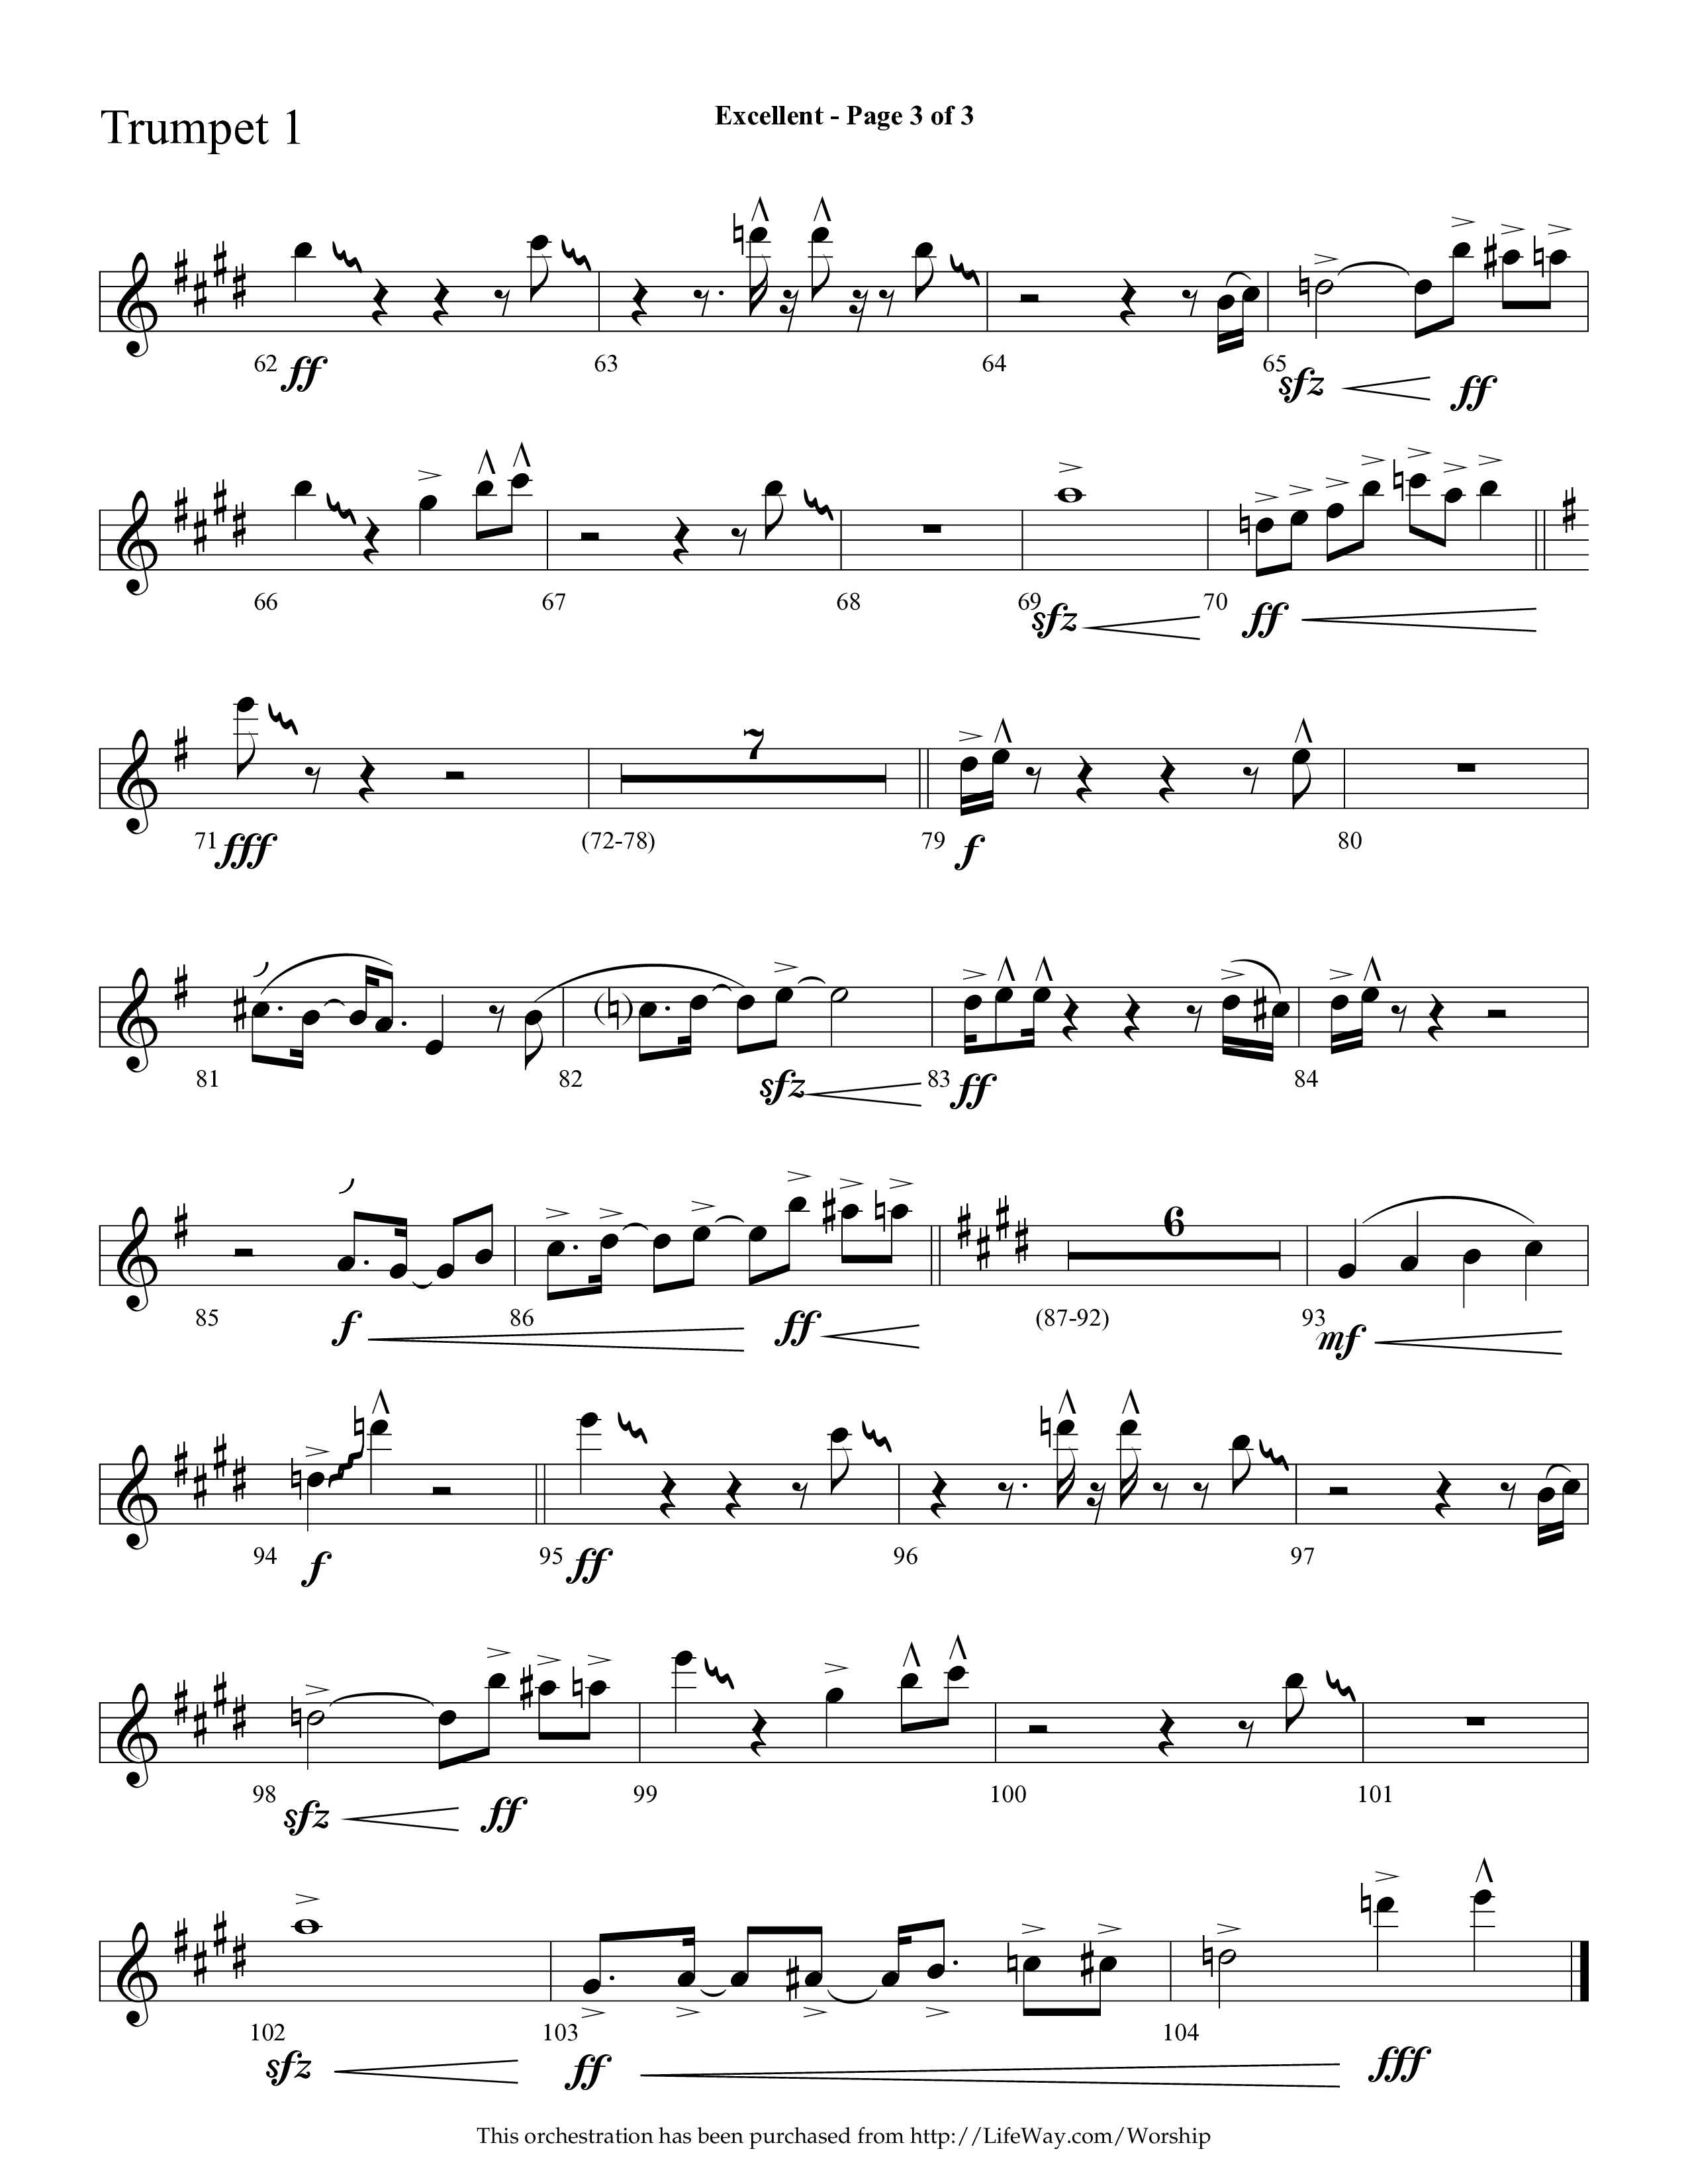 Excellent (Choral Anthem SATB) Trumpet 1 (Lifeway Choral / Arr. Cliff Duren)